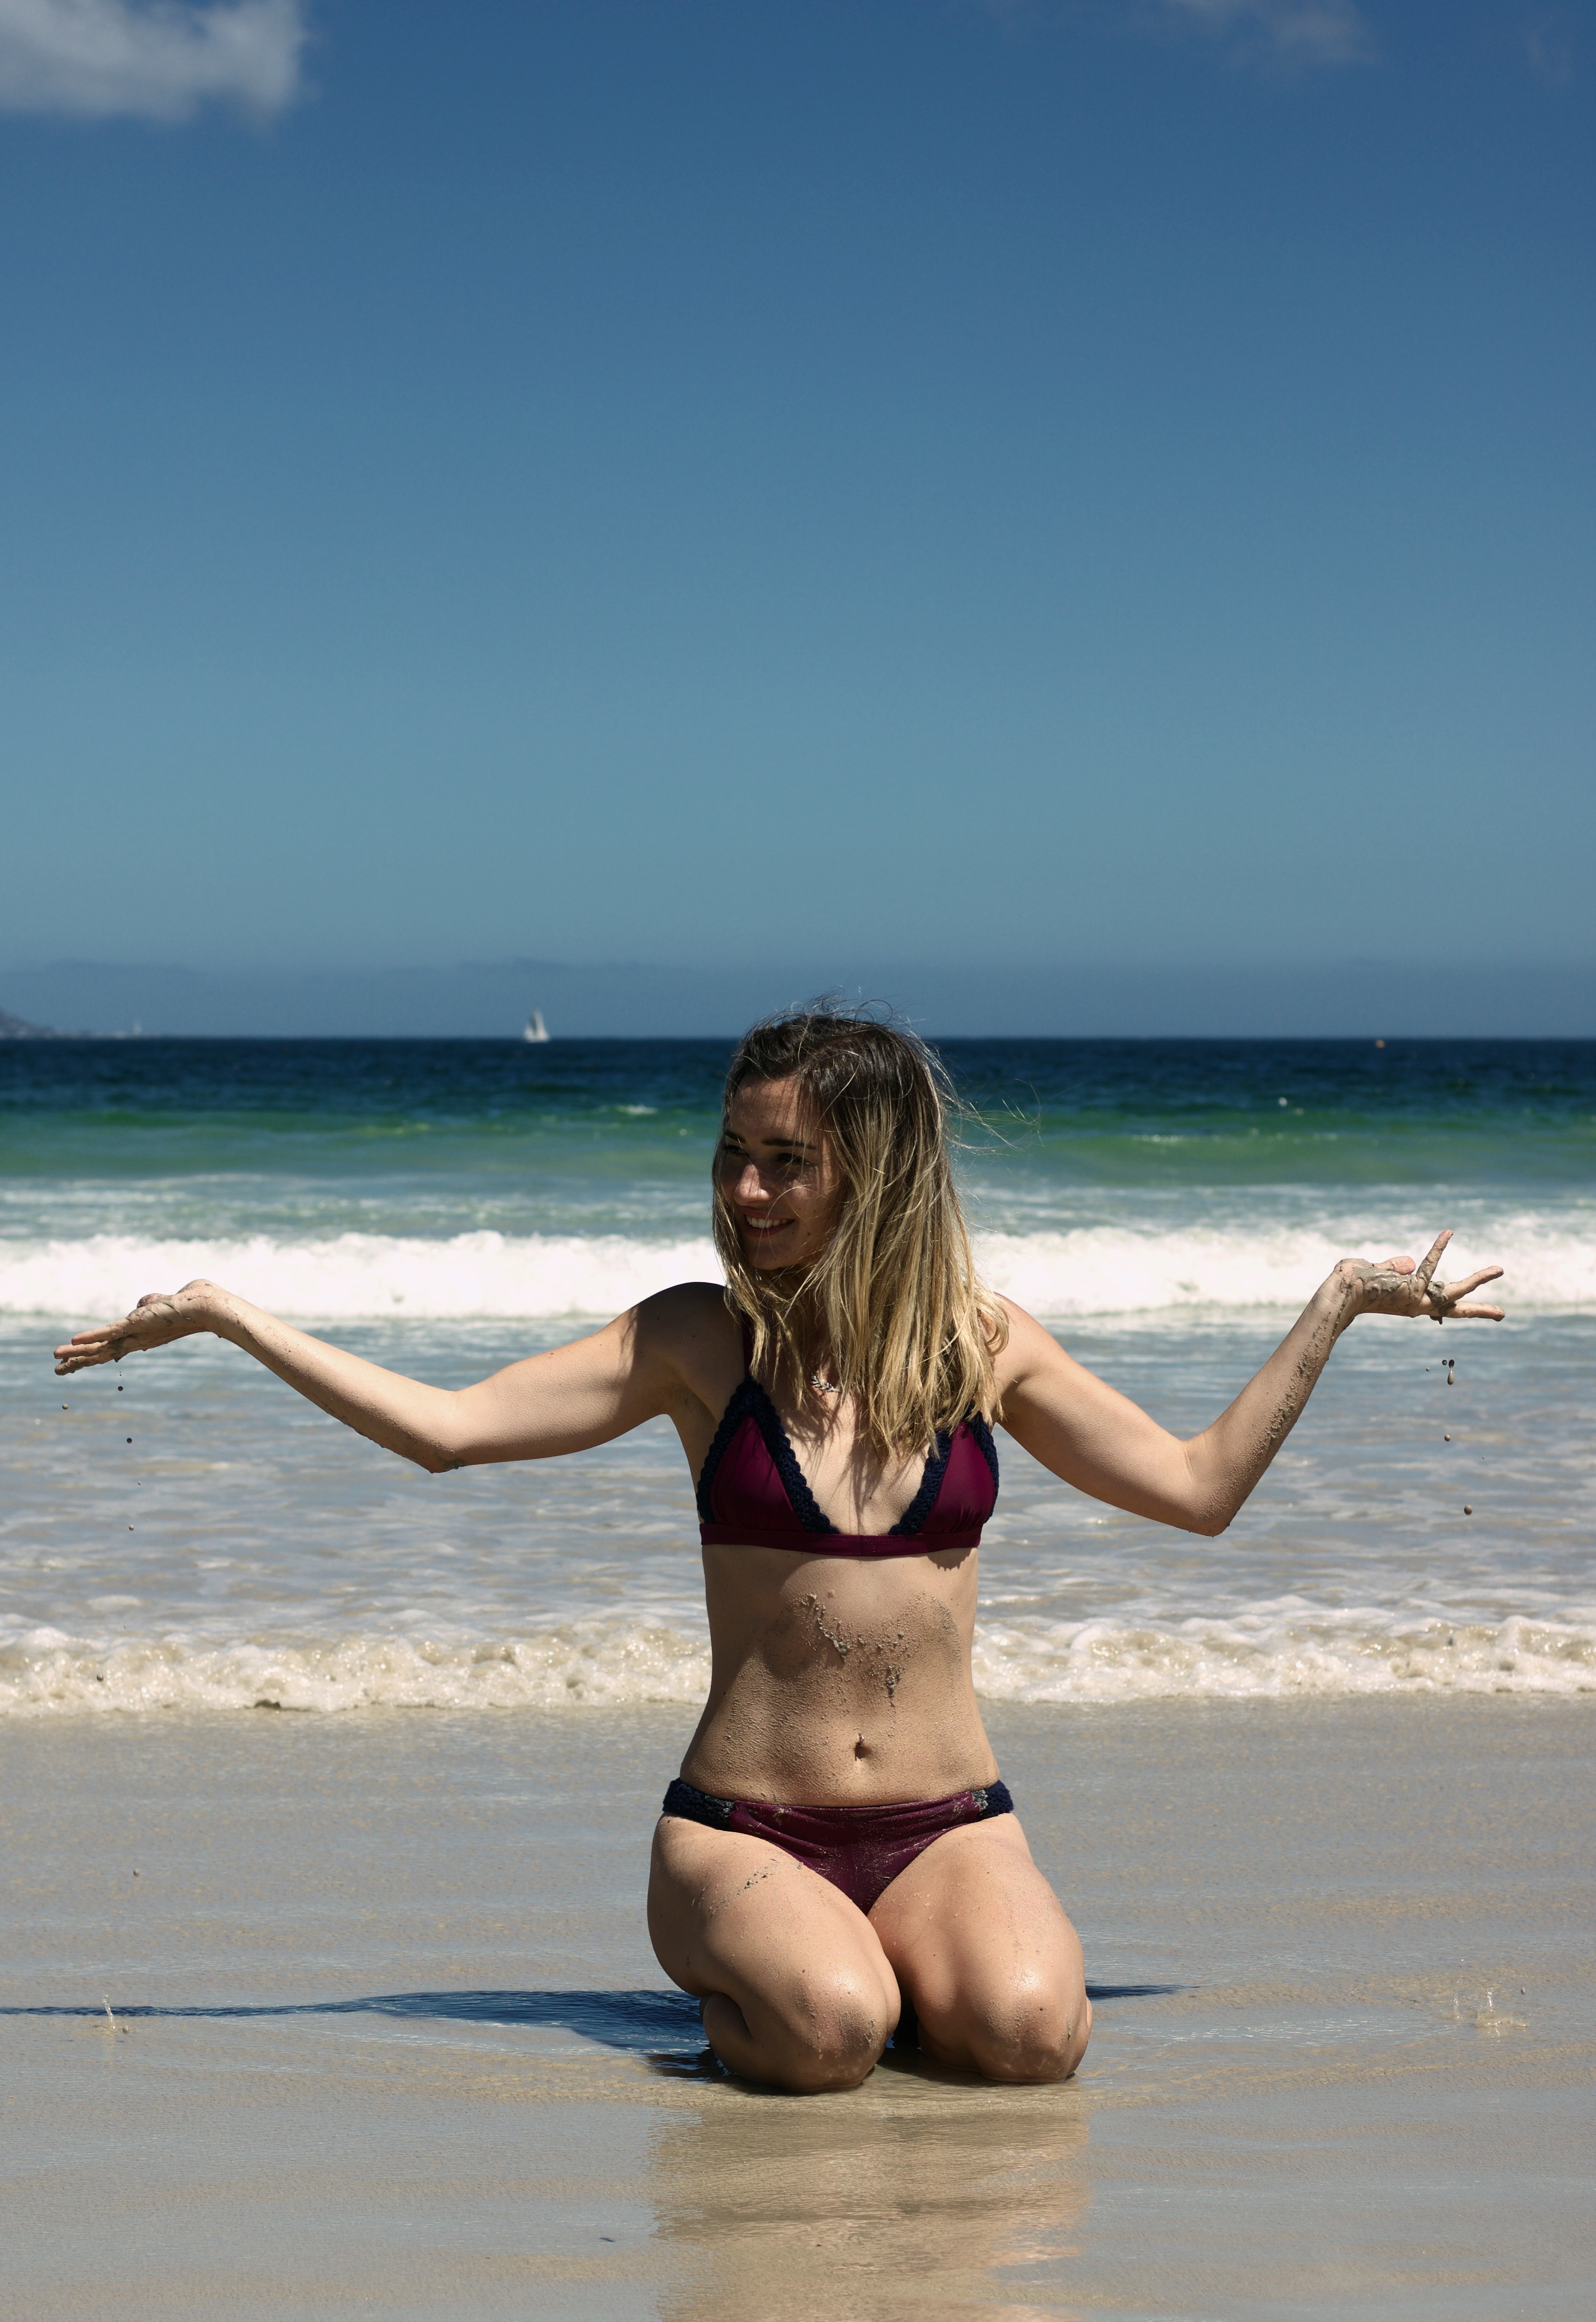 Woman Wearing Bikini on Seashore · Free Stock Photo